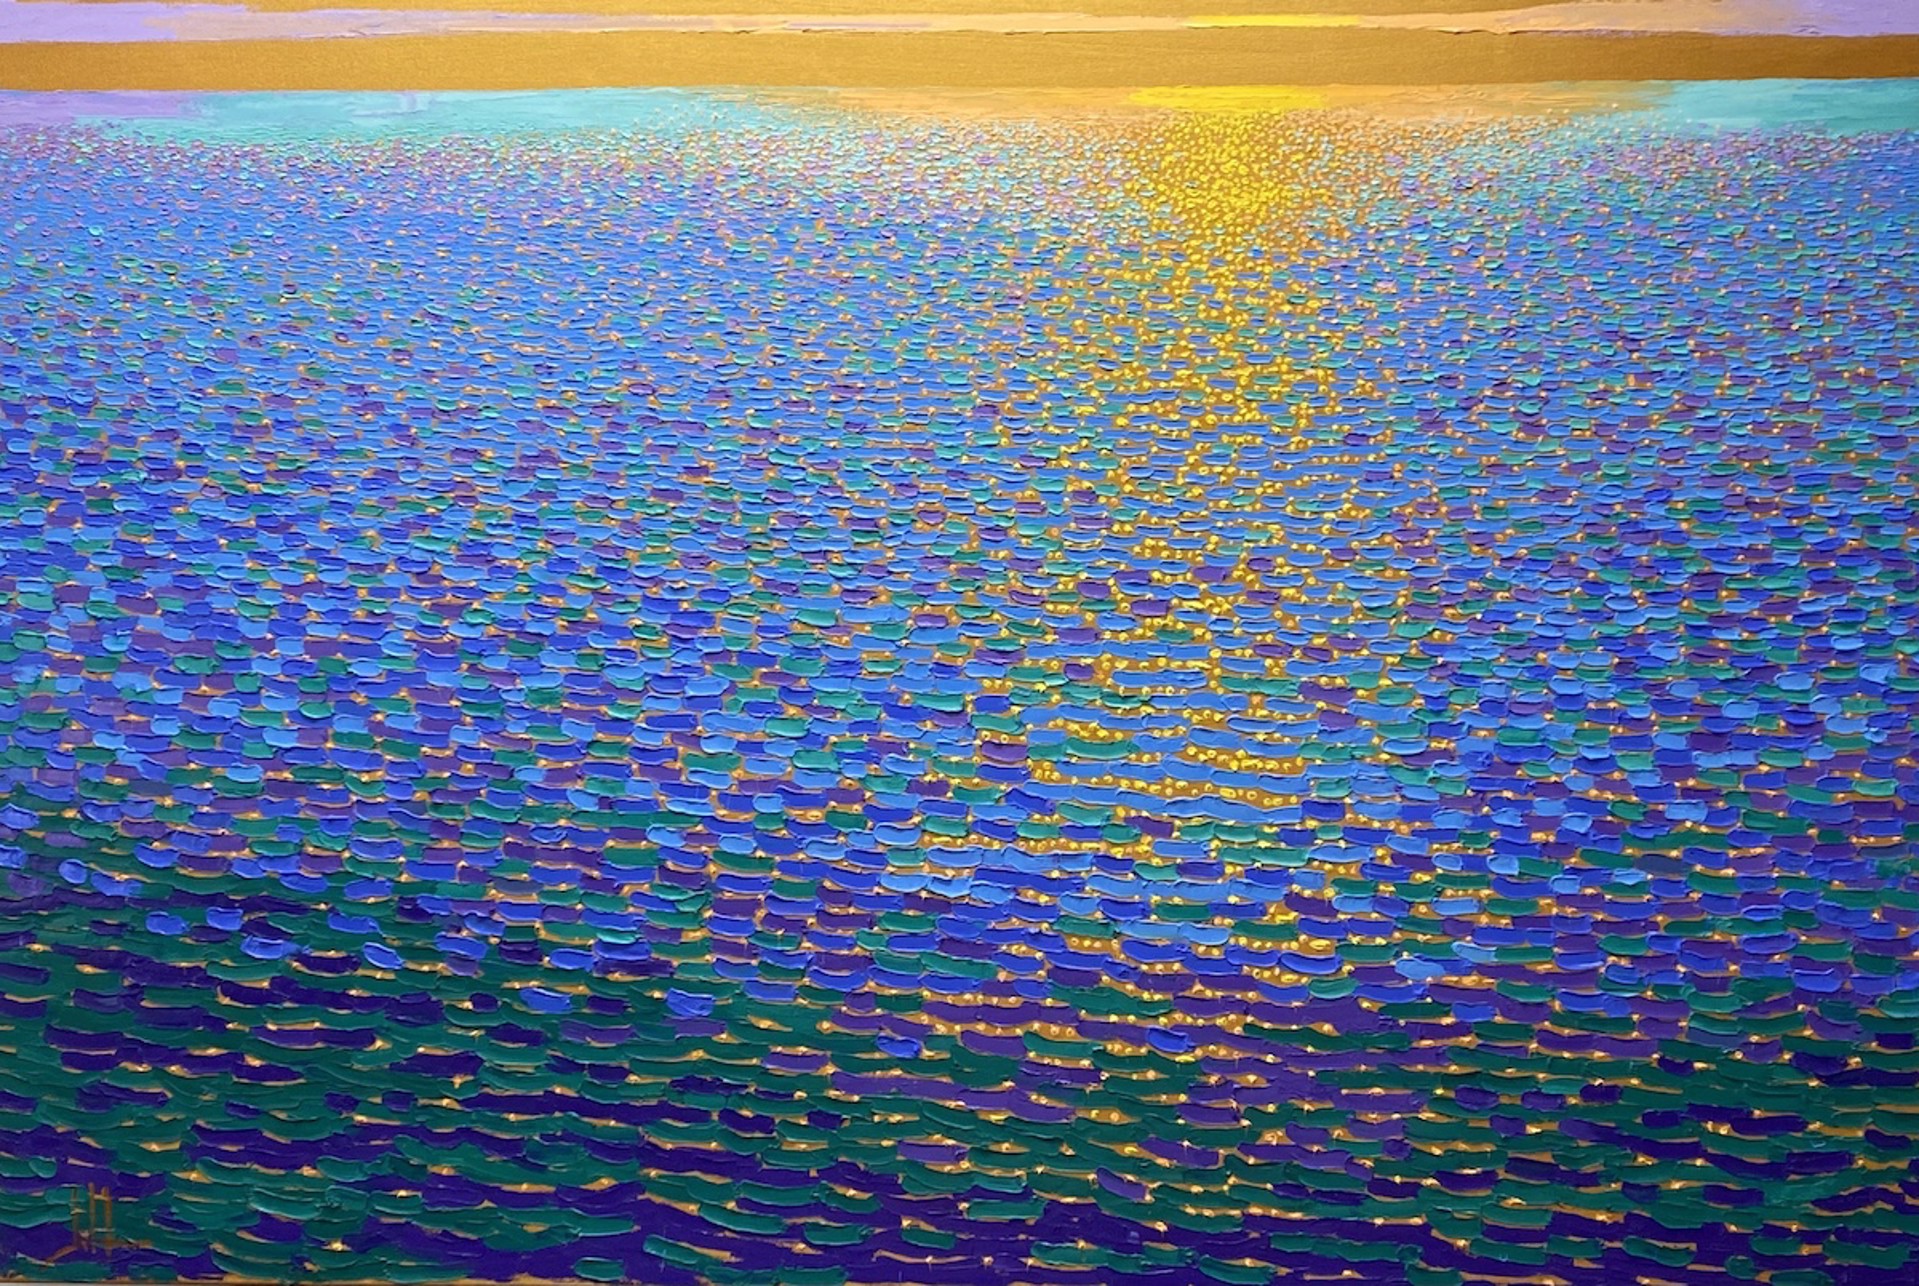 Shimmering sea by Jeff Daniel Smith